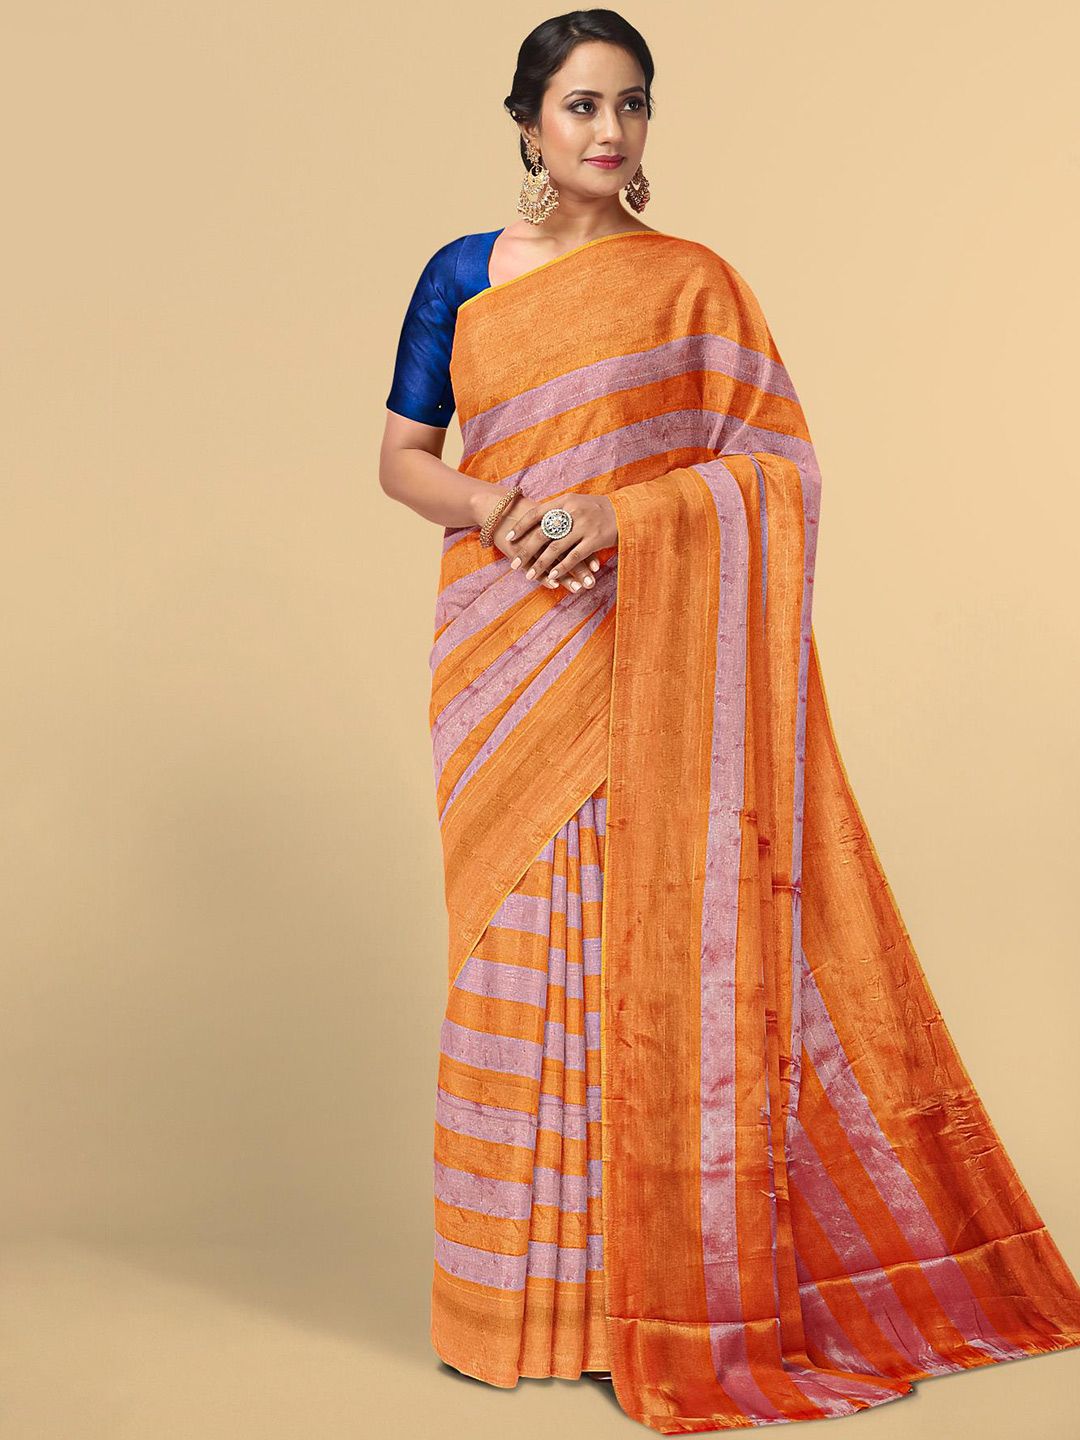 Kalamandir Orange & Gold-Toned Striped Zari Tissue Saree Price in India